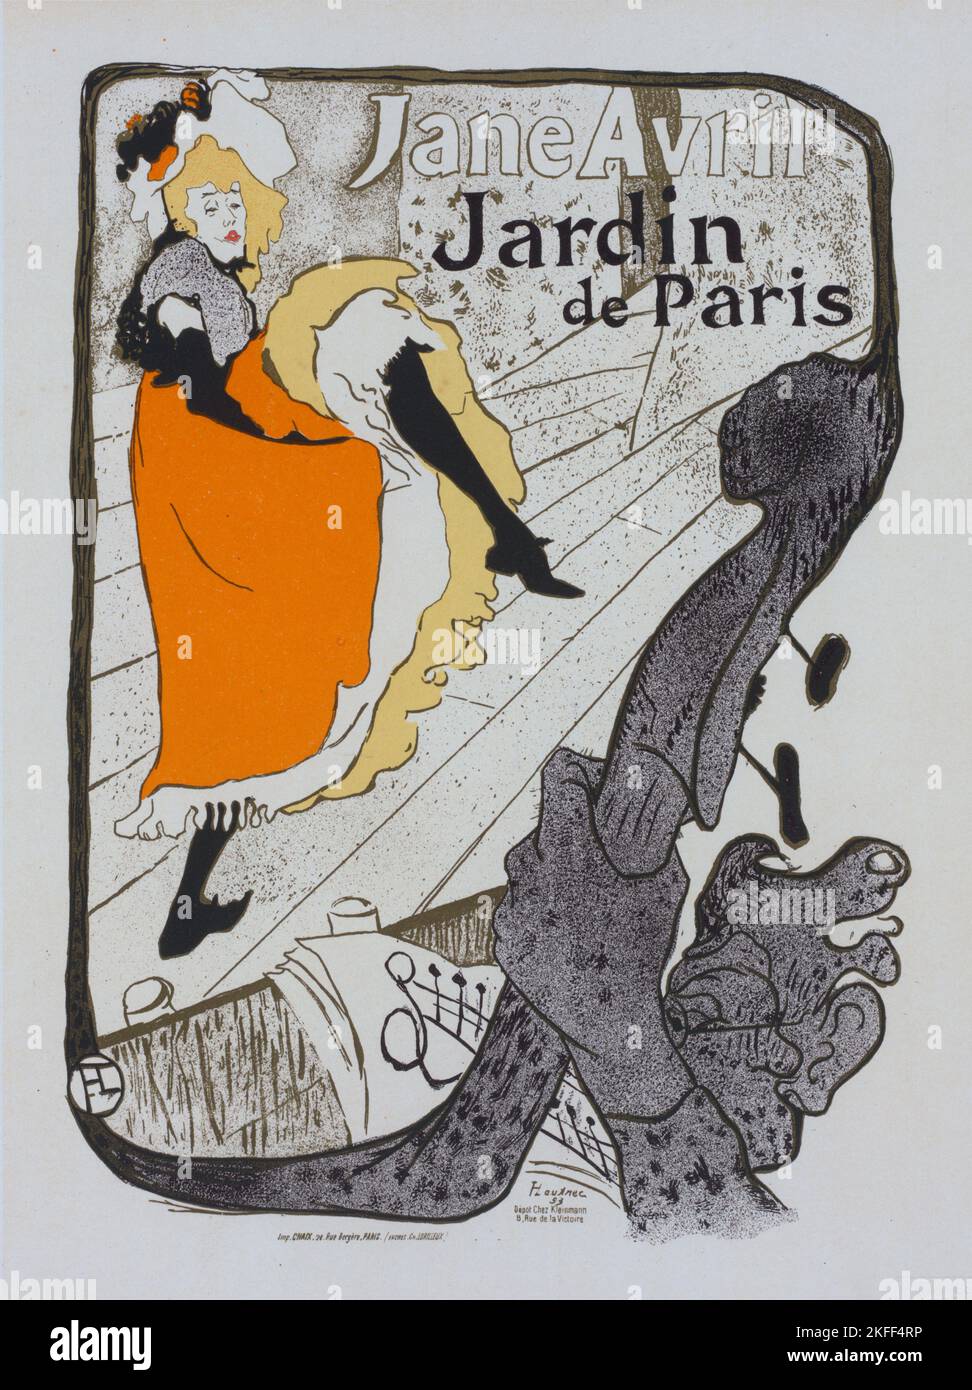 Affiche pour le jardin de Paris "Jane avril"., c1898. [Editeur: Imprimerie Chaix; lieu: Paris] Banque D'Images